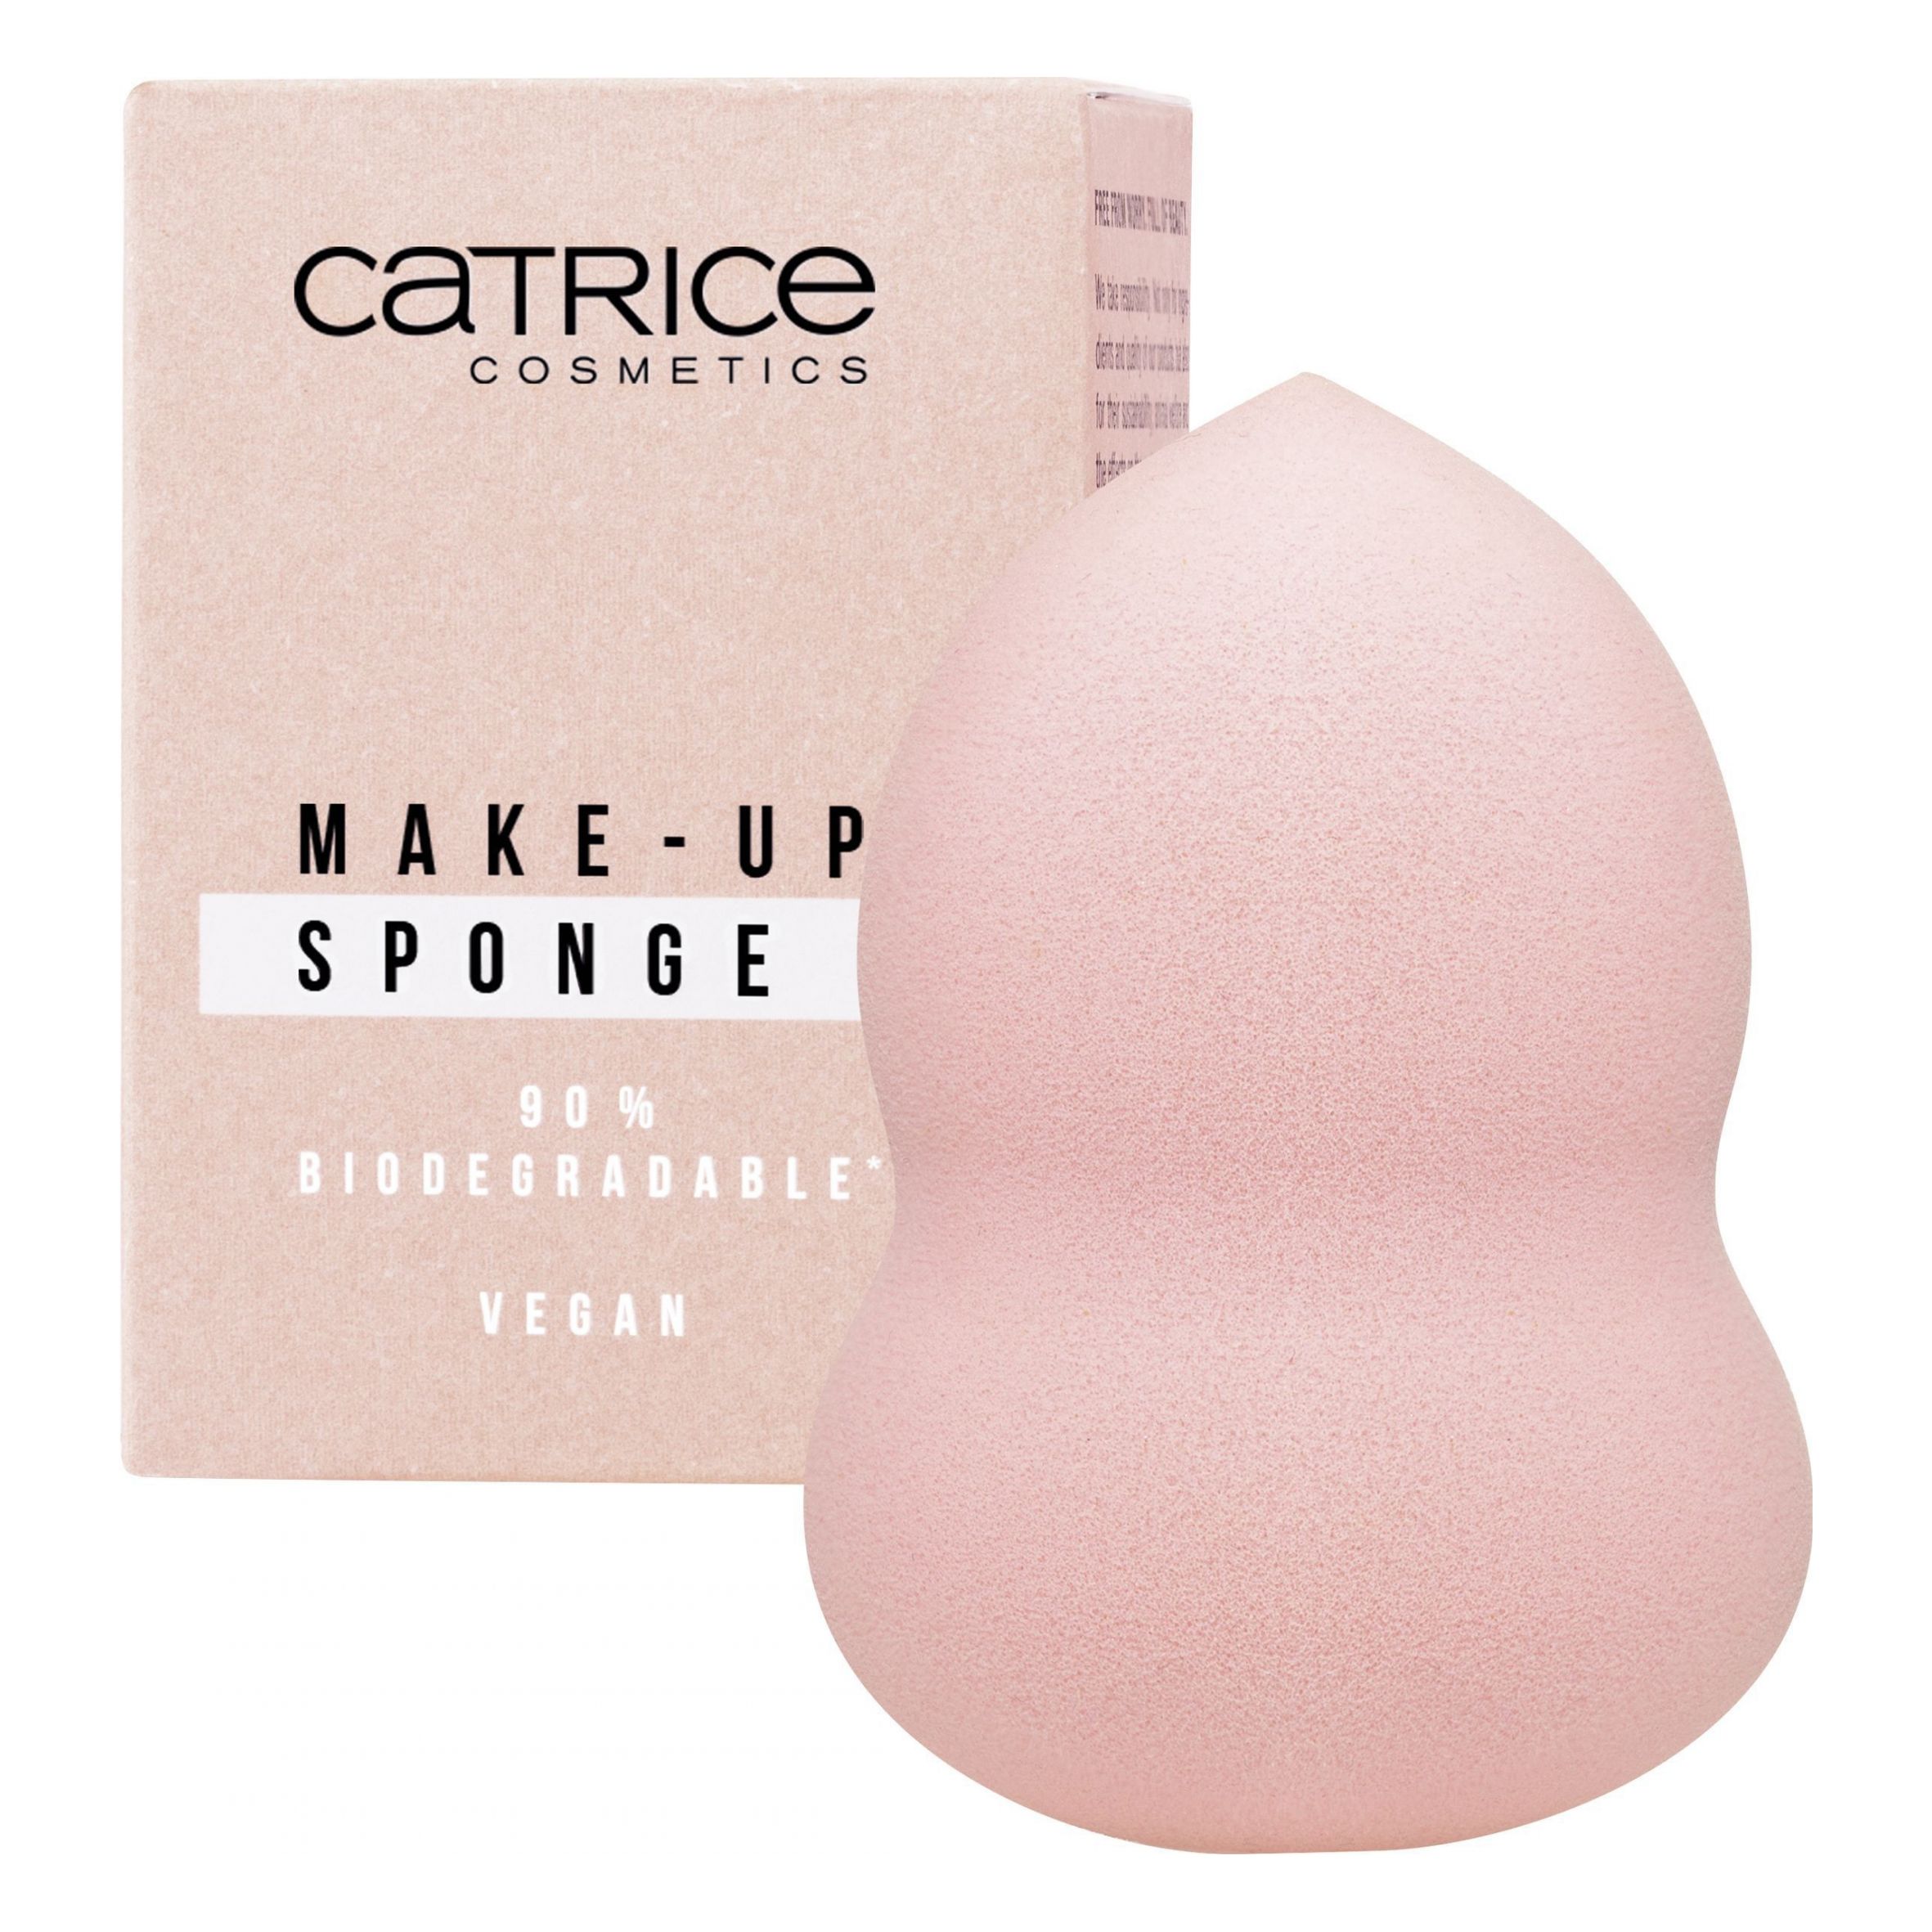 It Pieces Even Better - Make-Up Sponge